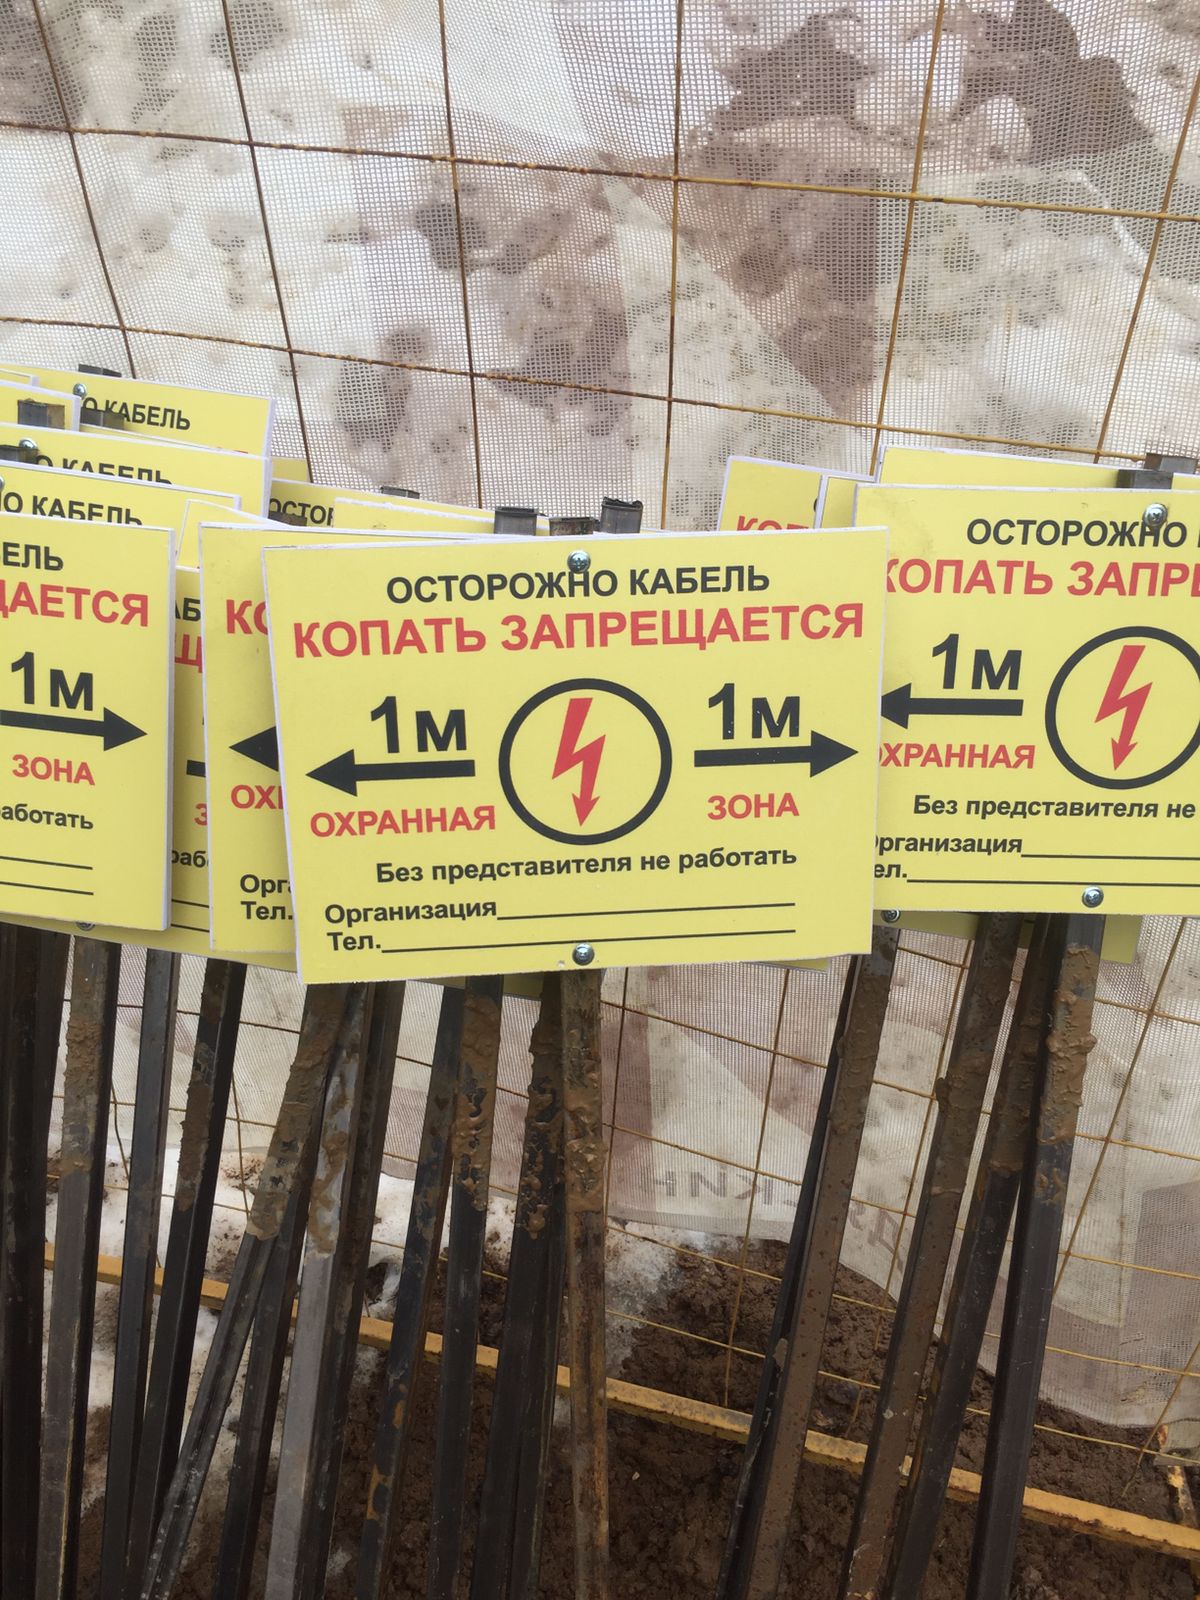 Купить Табличка ОСТОРОЖНО КАБЕЛЬ копать запрещается (Пластик, 200 х 250 мм.) в Москве